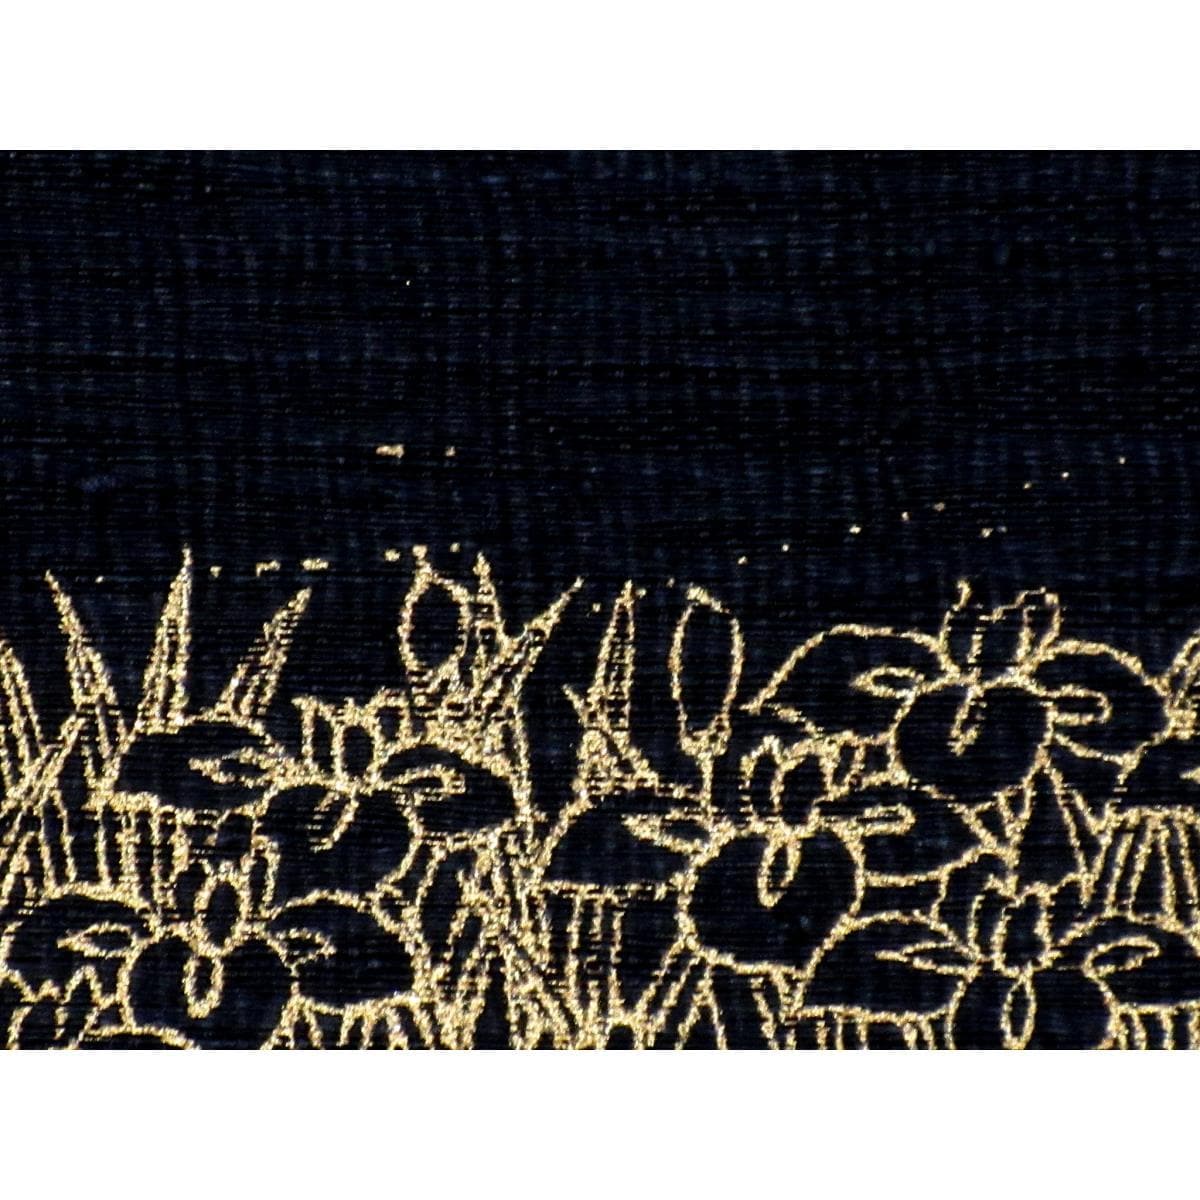 袋带茧绸镂空钩织金彩加工